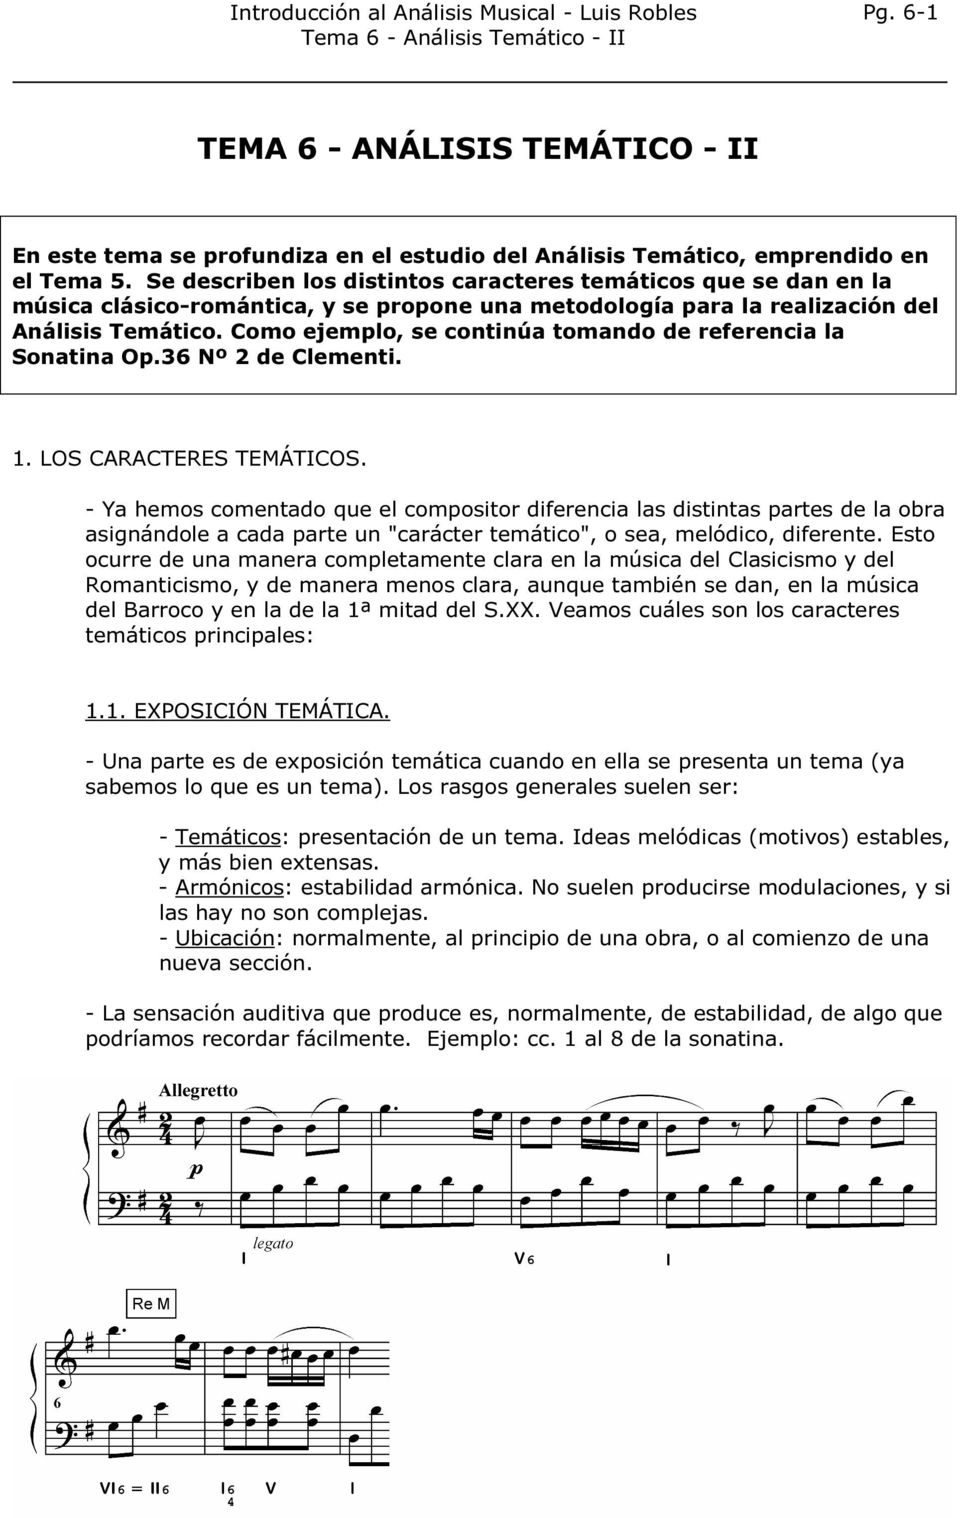 Como ejemplo, se continúa tomando de referencia la Sonatina Op.36 Nº 2 de Clementi. 1. LOS CARACTERES TEMÁTICOS.